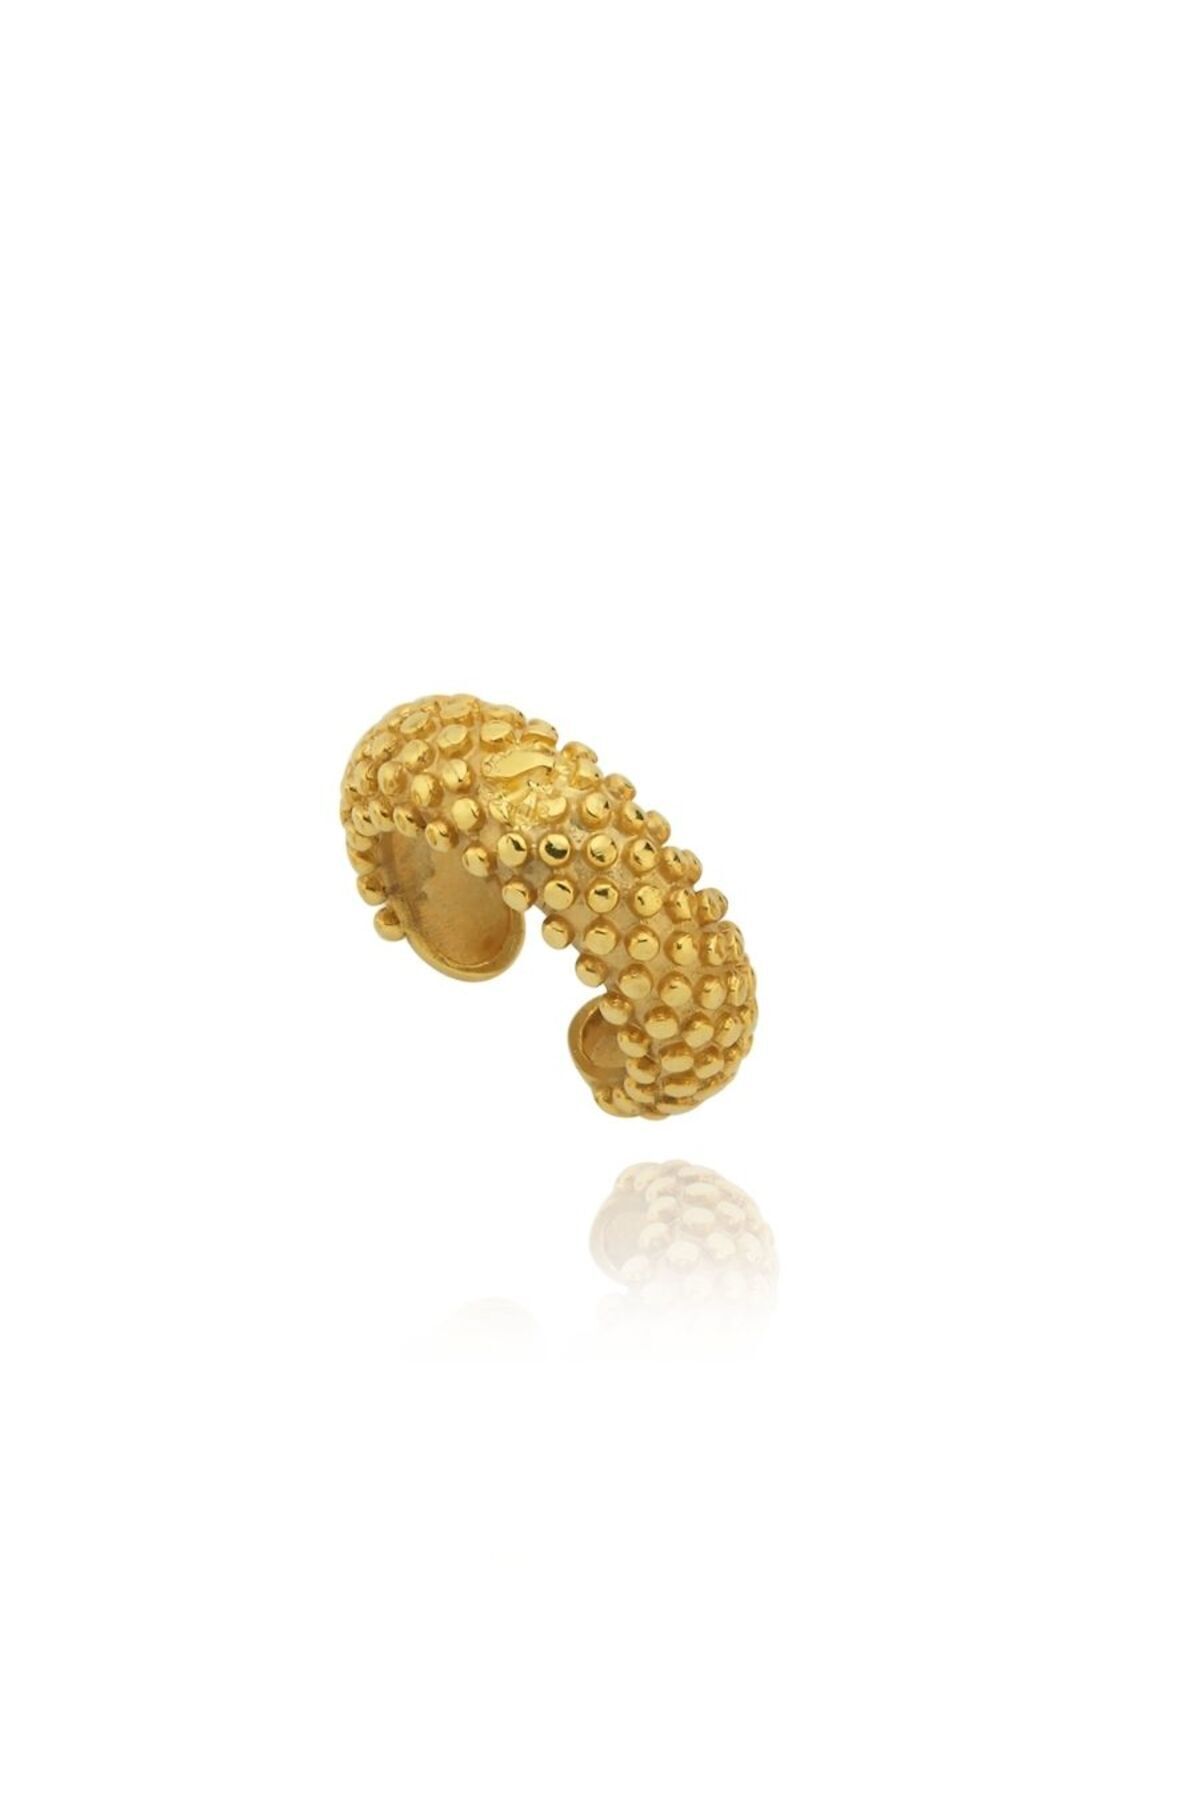 Linya Jewellery Janet Toplu Kıkırdak Küpe Gold